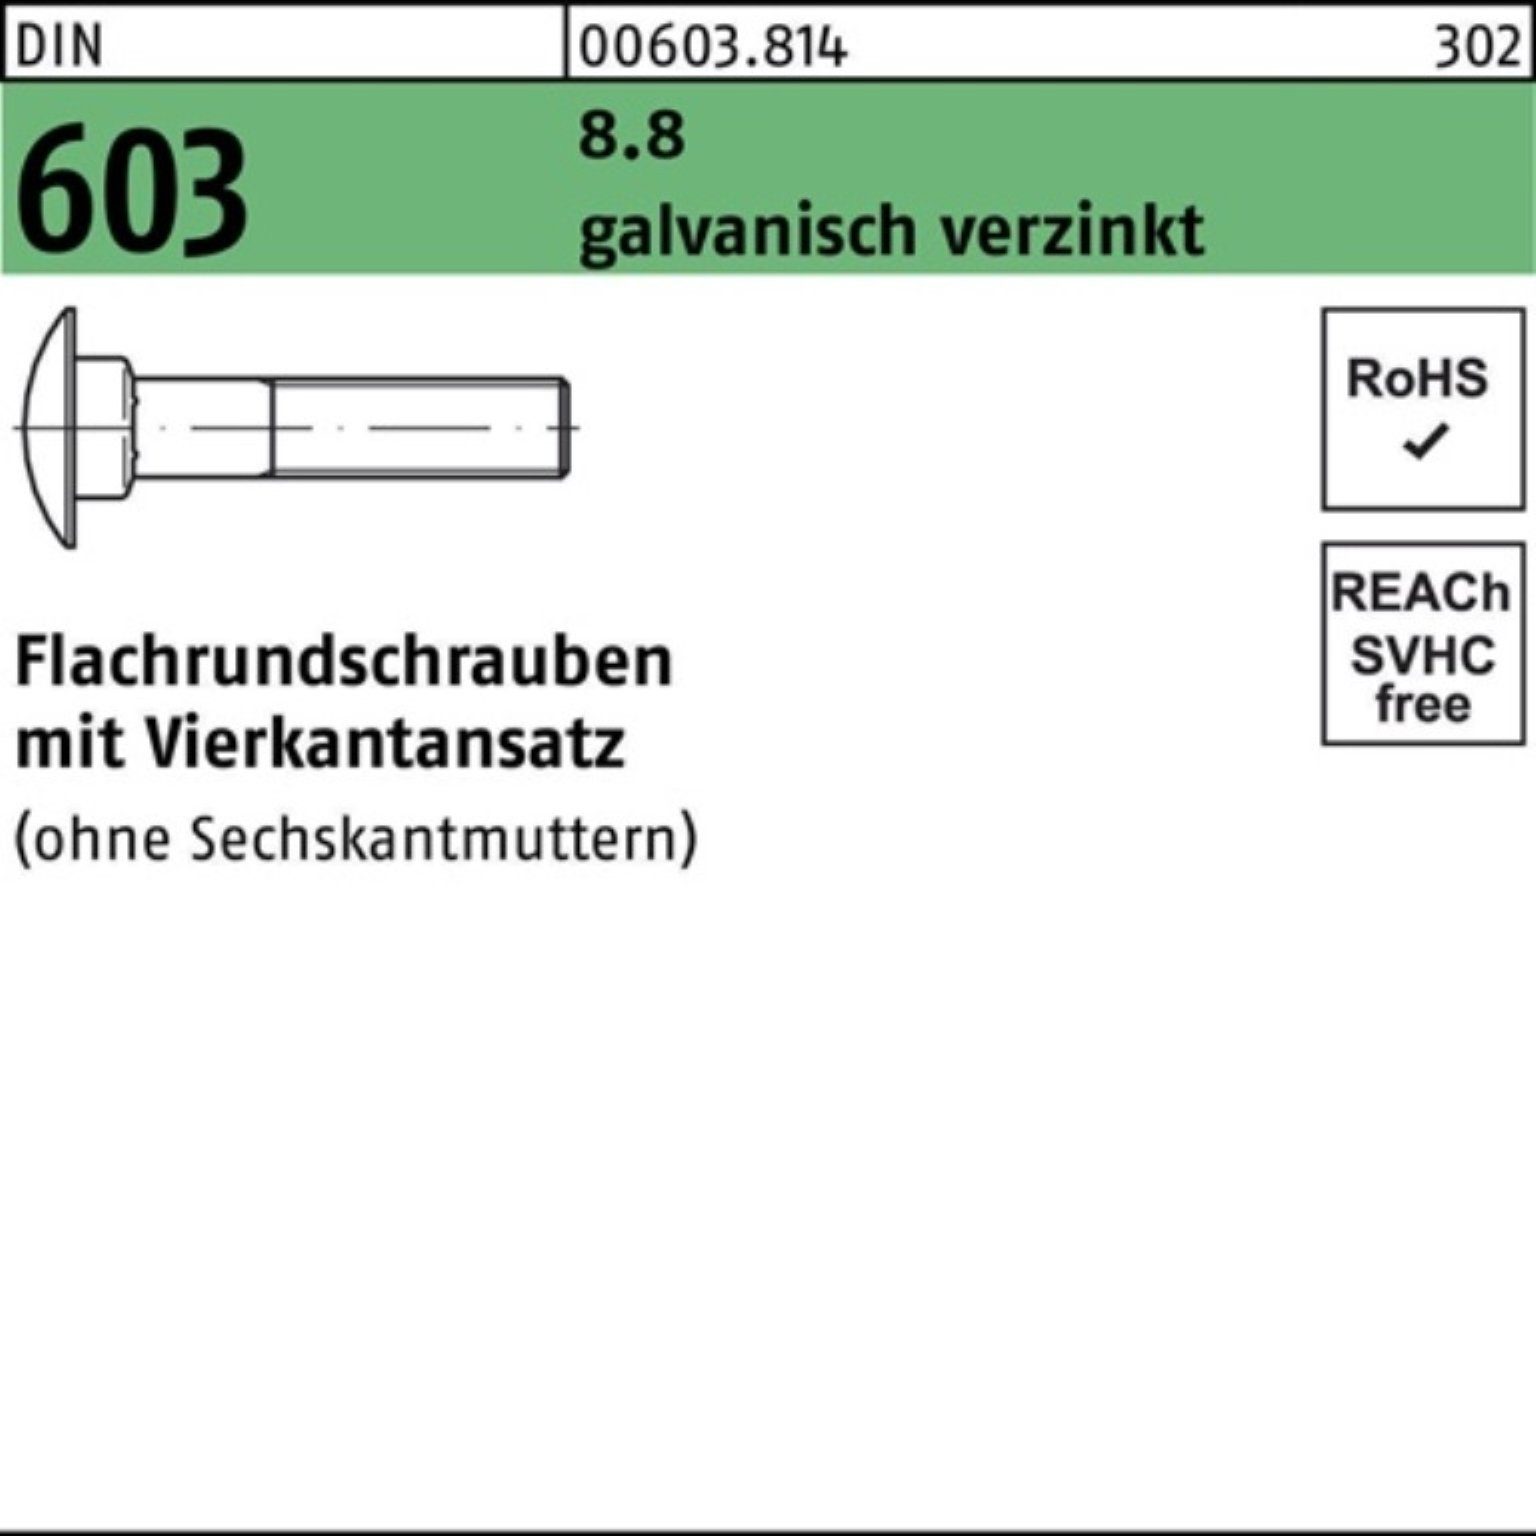 Reyher Schraube 100er Pack Flachrundschraube Vierkantansatz 603 DIN galv.ve M10x55 8.8